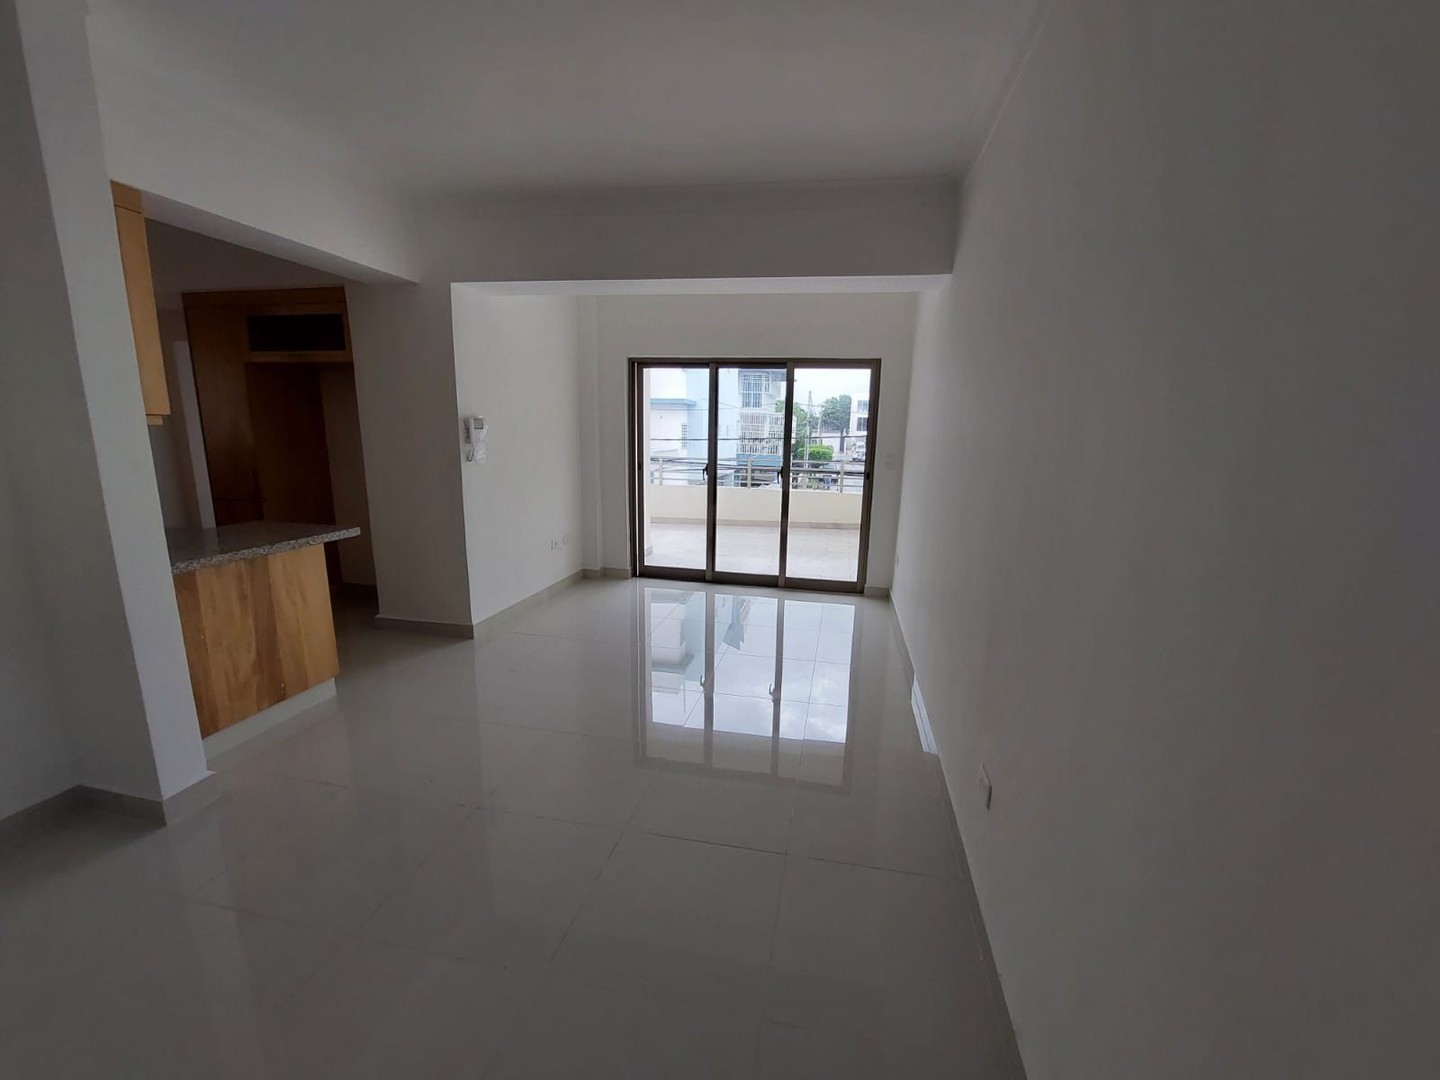 apartamentos - Apartamento Nuevo en Venta
LOS PRADOS
USD 215,000.00
Mantenimiento: RD$6,000.00
 4